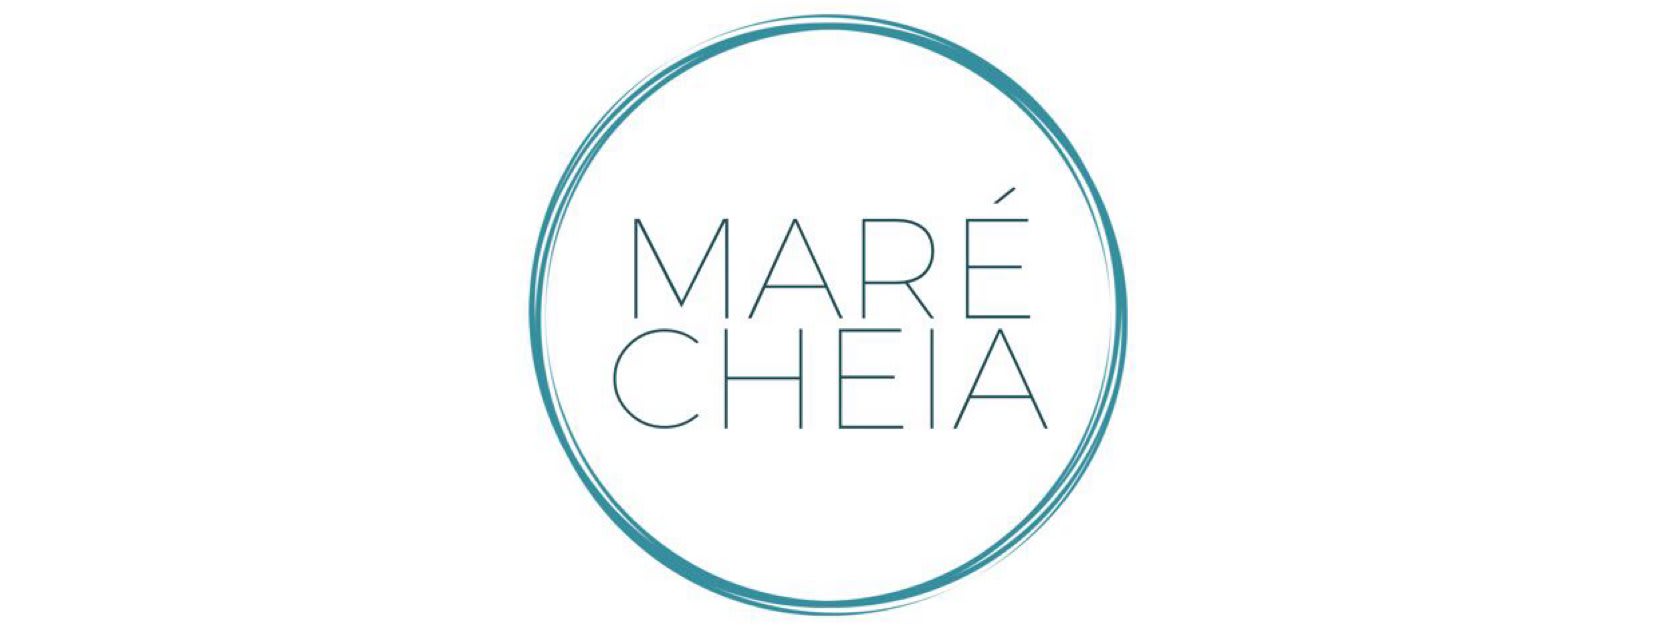 Maré Cheia